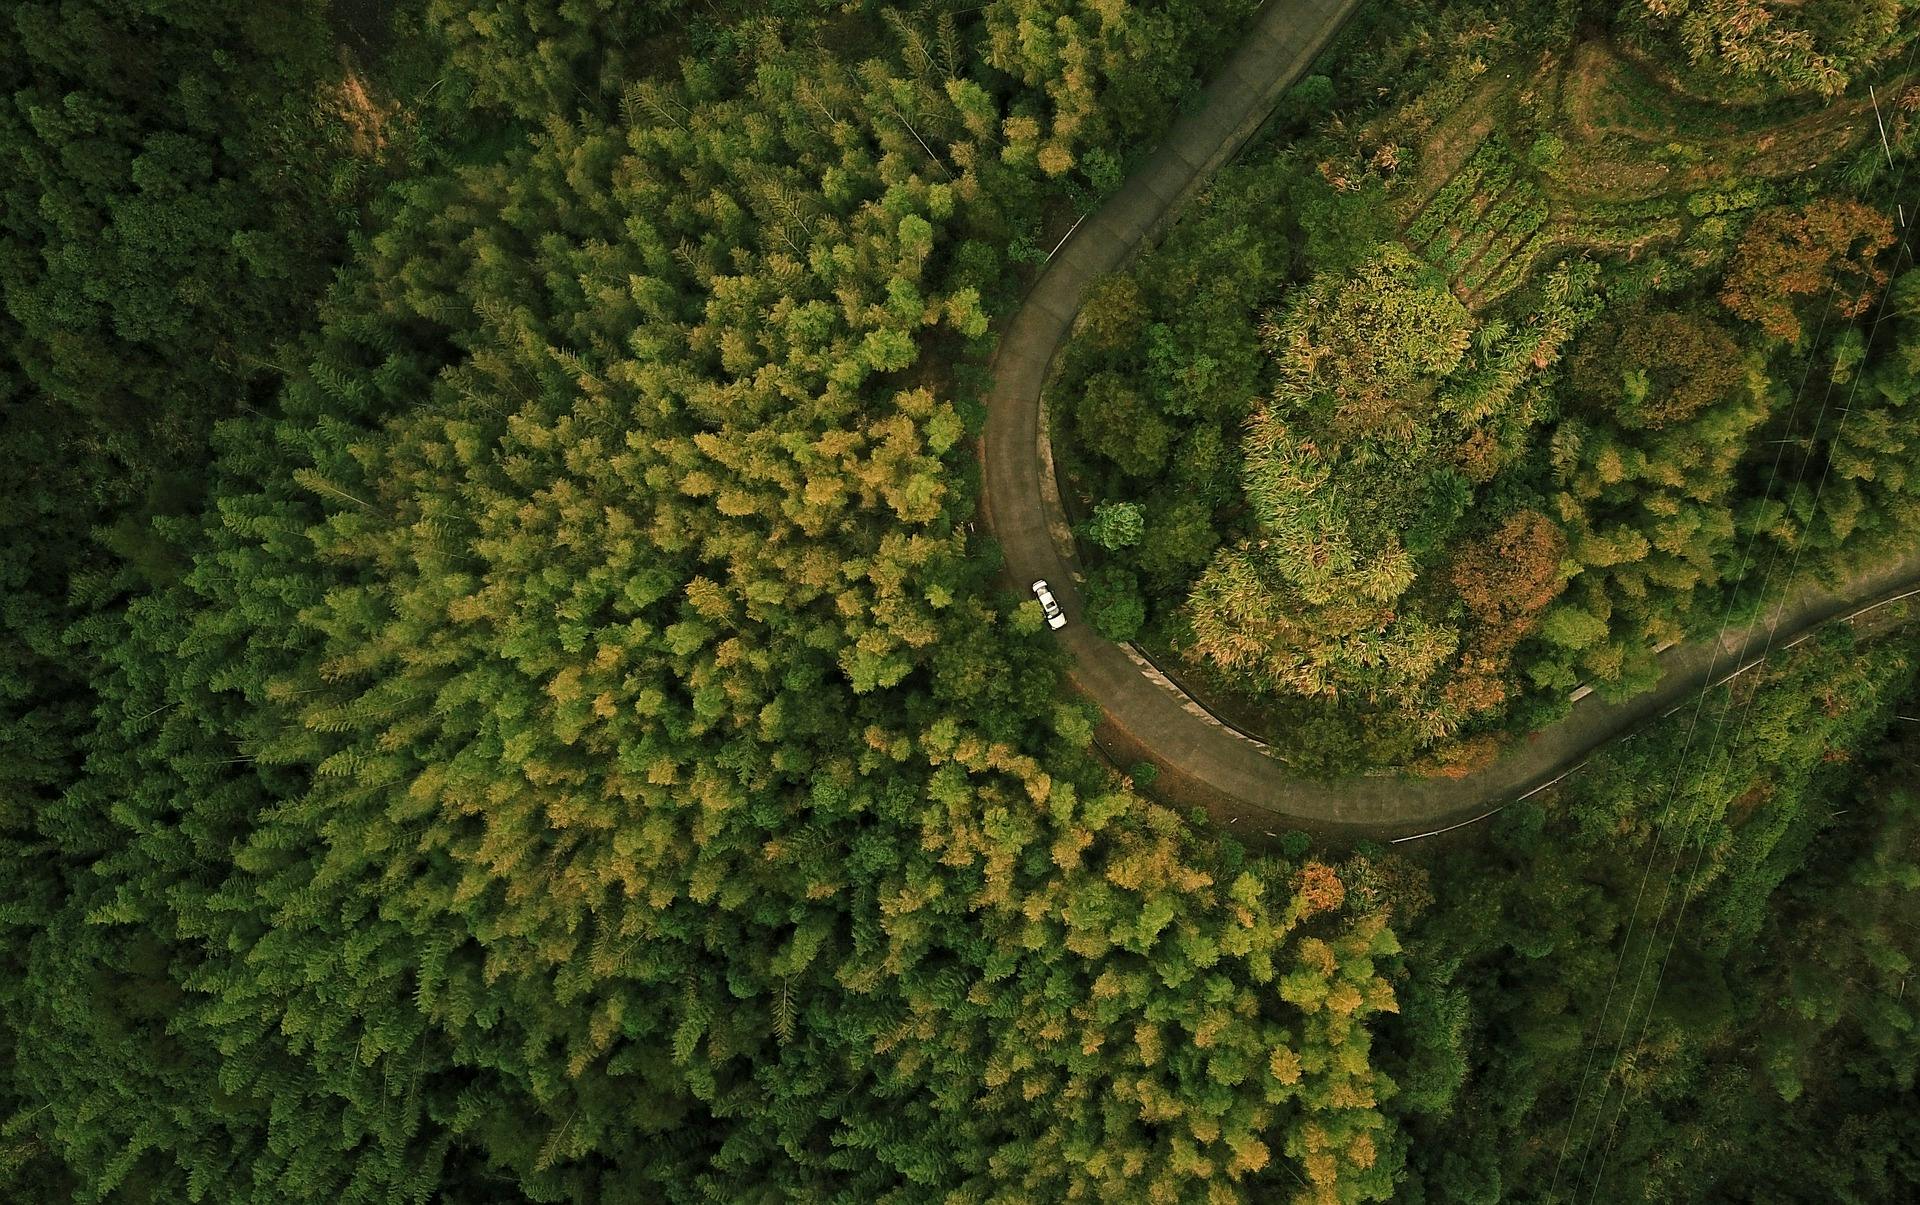 Skog tagen med drönare - Image by will zhang